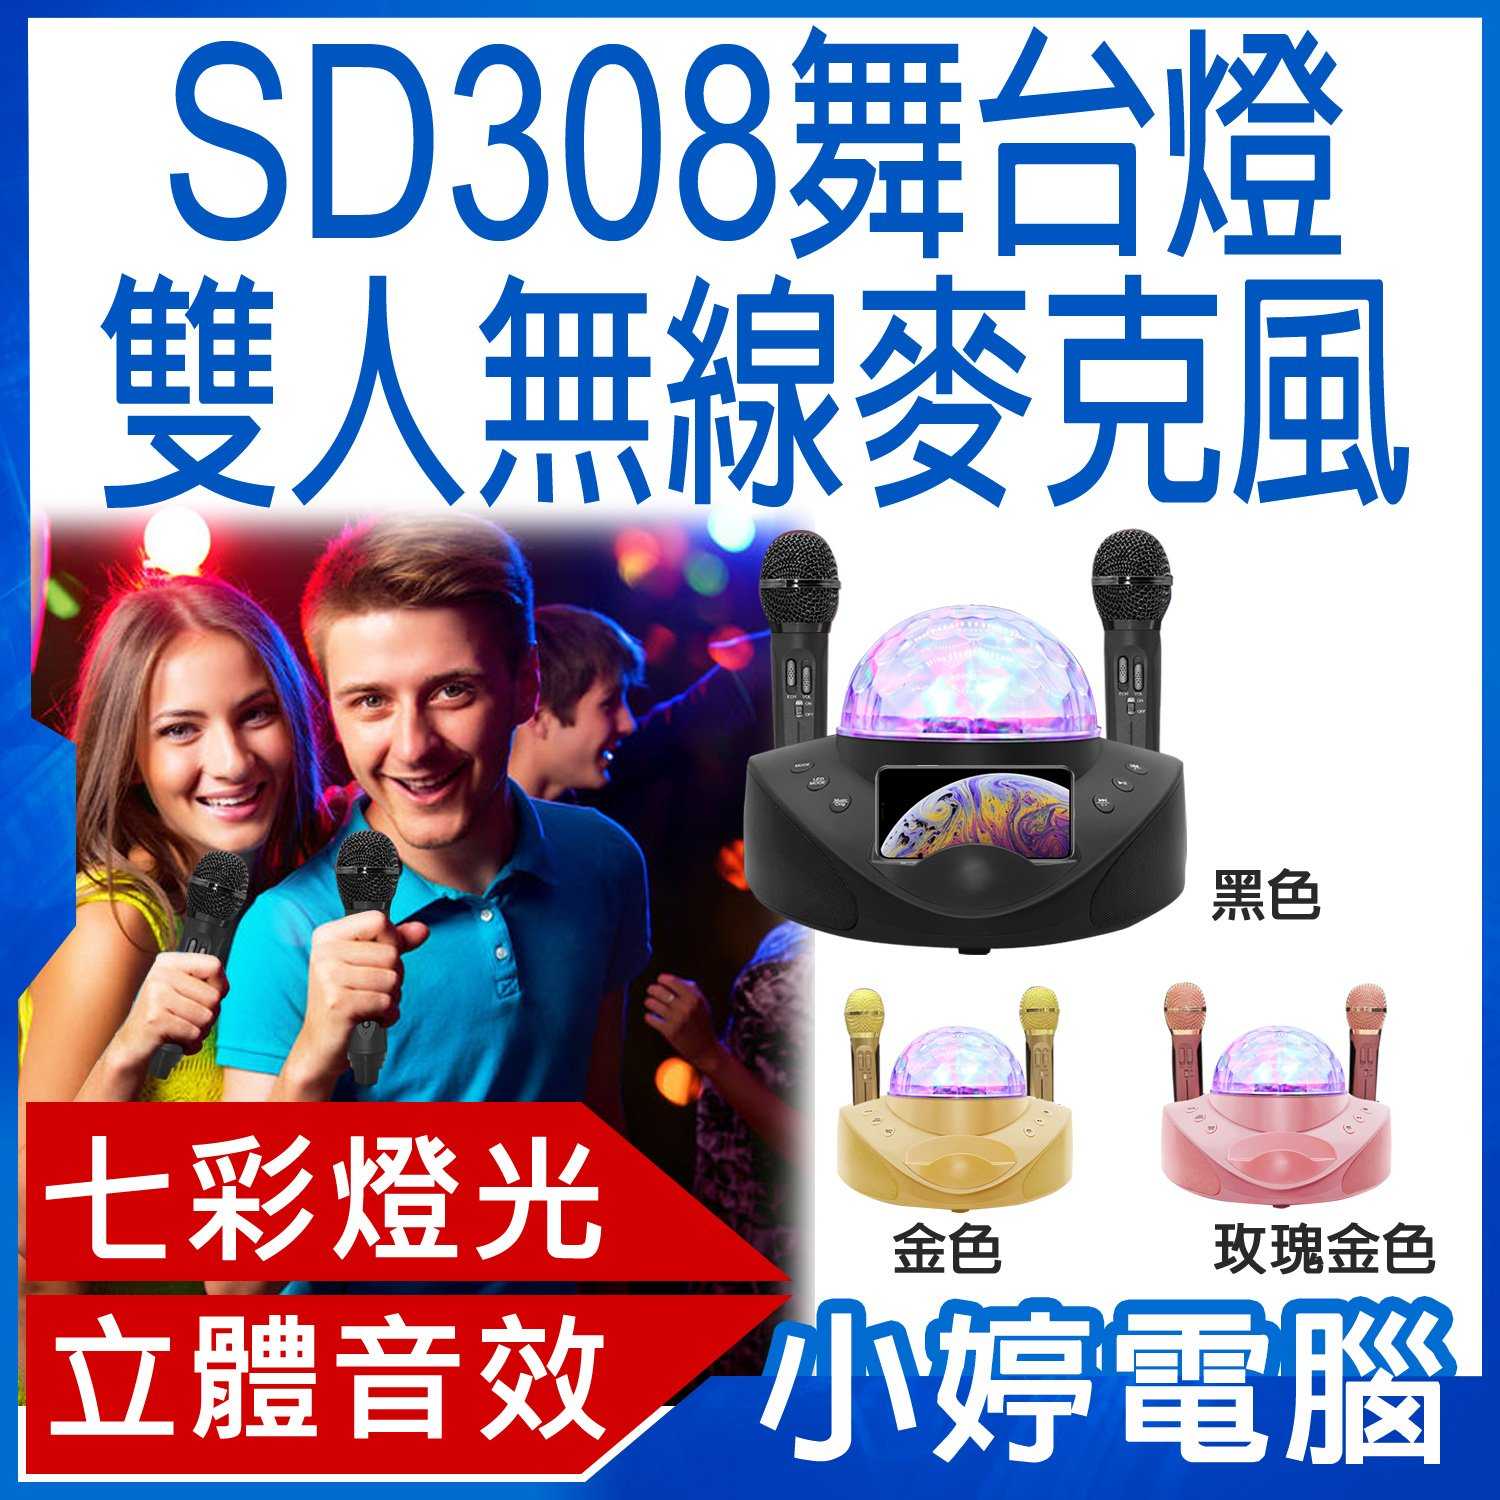 【小婷電腦】SD308舞台燈雙人K歌無線麥克風10W喇叭 10瓦雙喇叭 豐富模式 外接孔多元 震撼音效